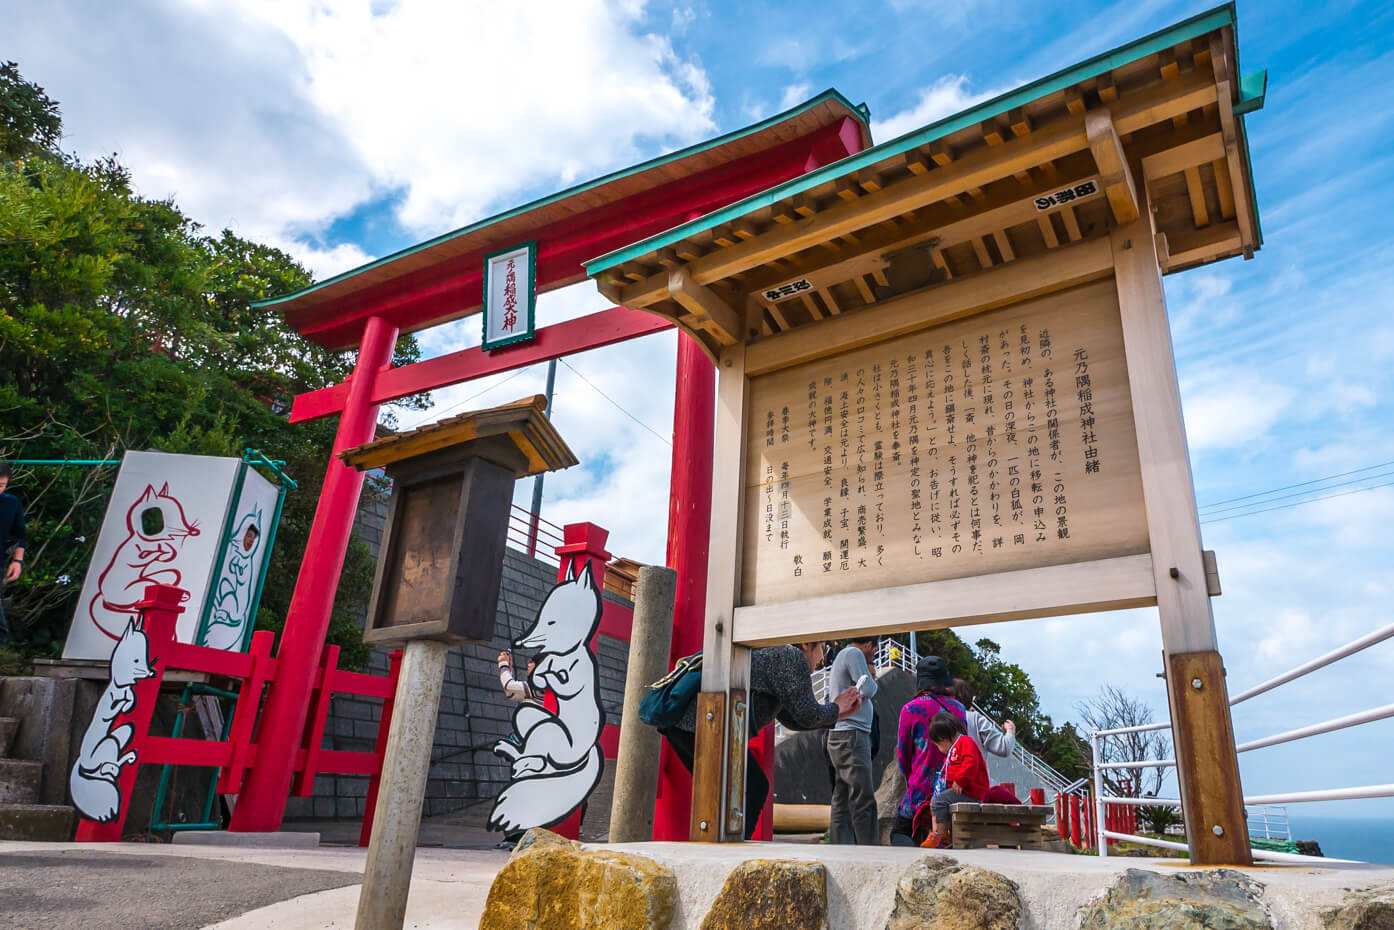 元乃隅稲荷神社の鳥居と看板